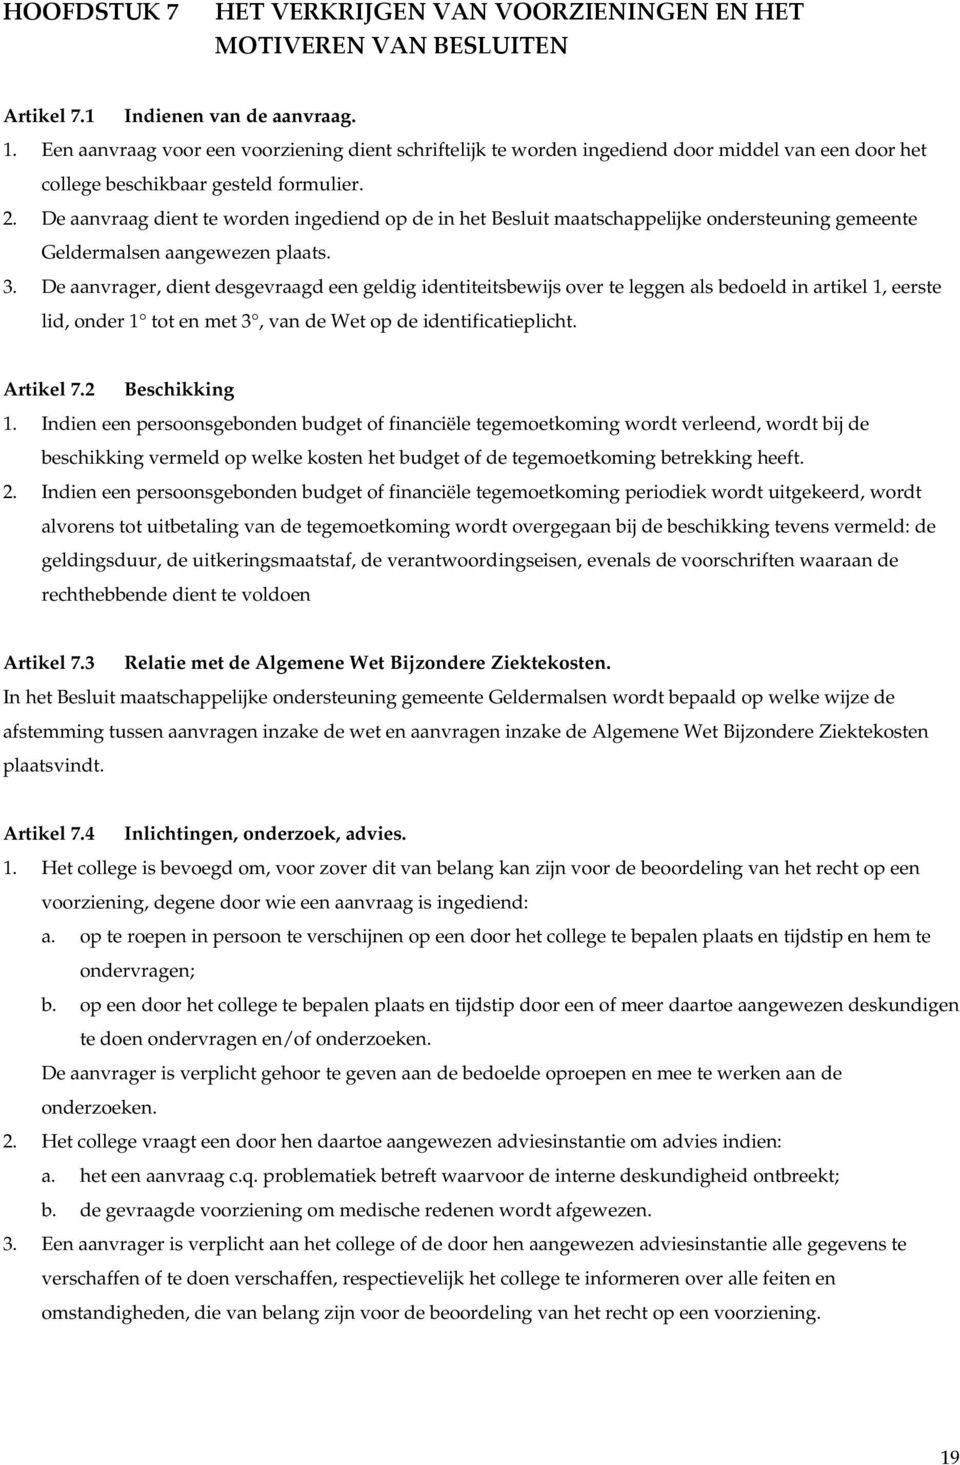 De aanvraag dient te worden ingediend op de in het Besluit maatschappelijke ondersteuning gemeente Geldermalsen aangewezen plaats. 3.